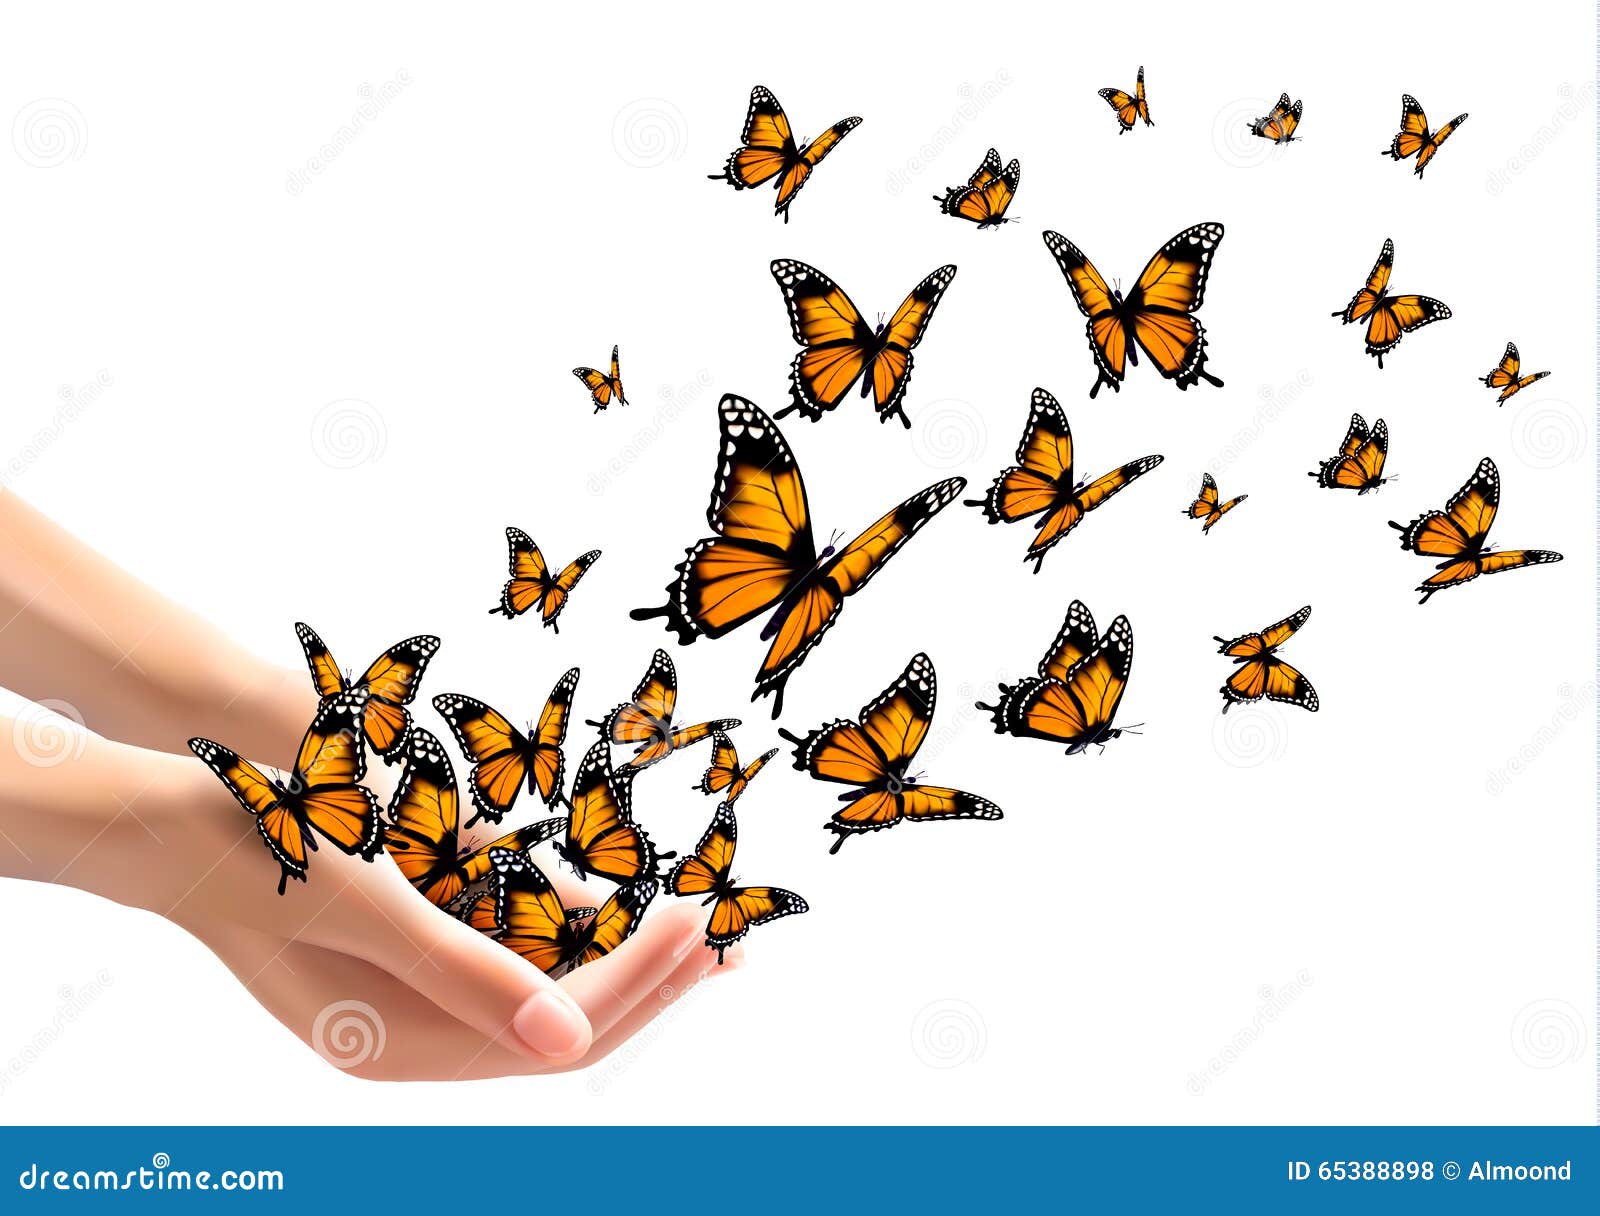 hands releasing butterflies.